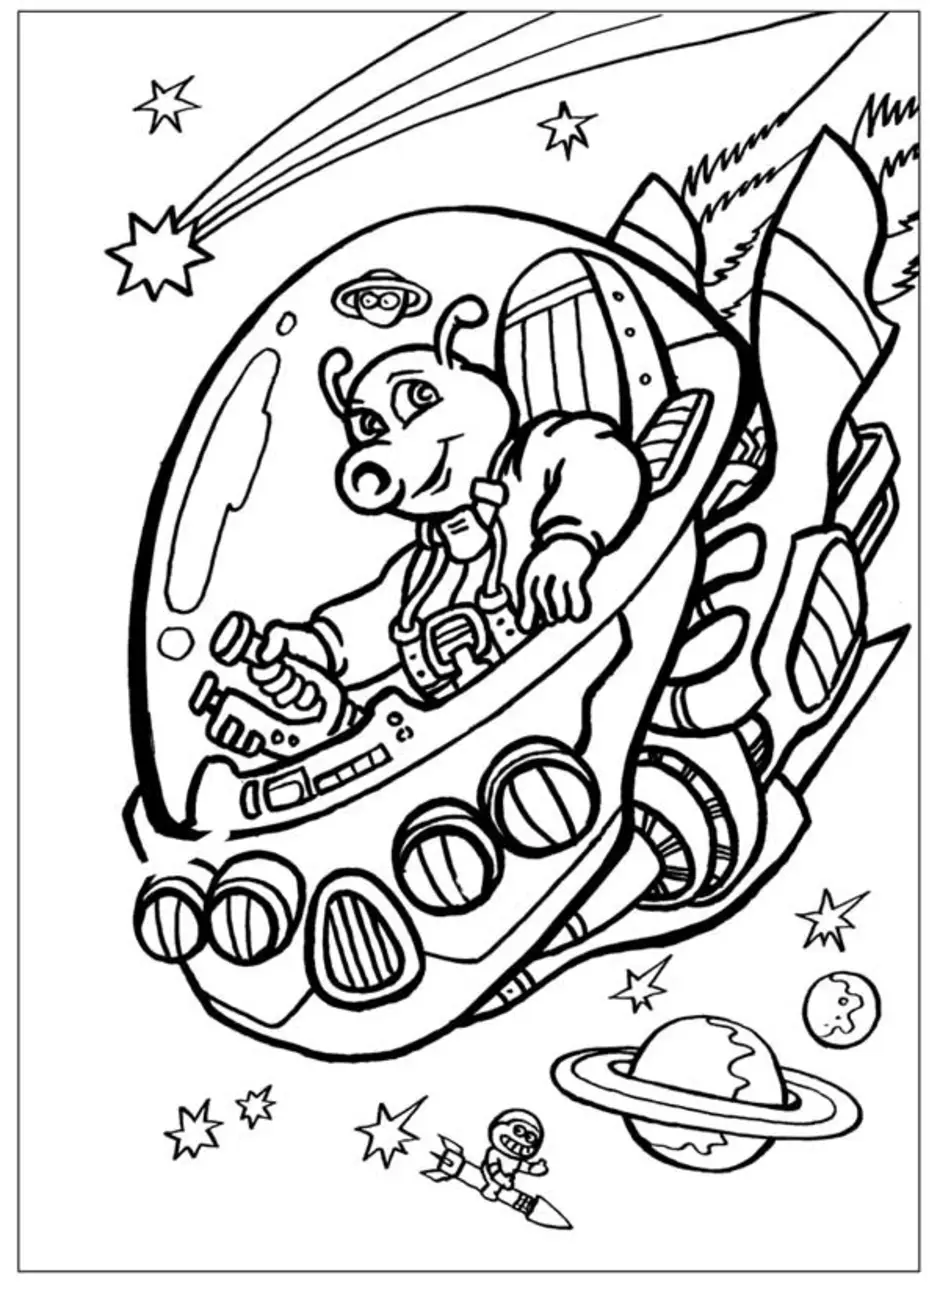 Раскраски 12 апреля день космонавтики для детей. Раскраска. В космосе. Космос раскраска для детей. Раскраски ко Дню космонавтики. Раскраска день космонавтики для детей.